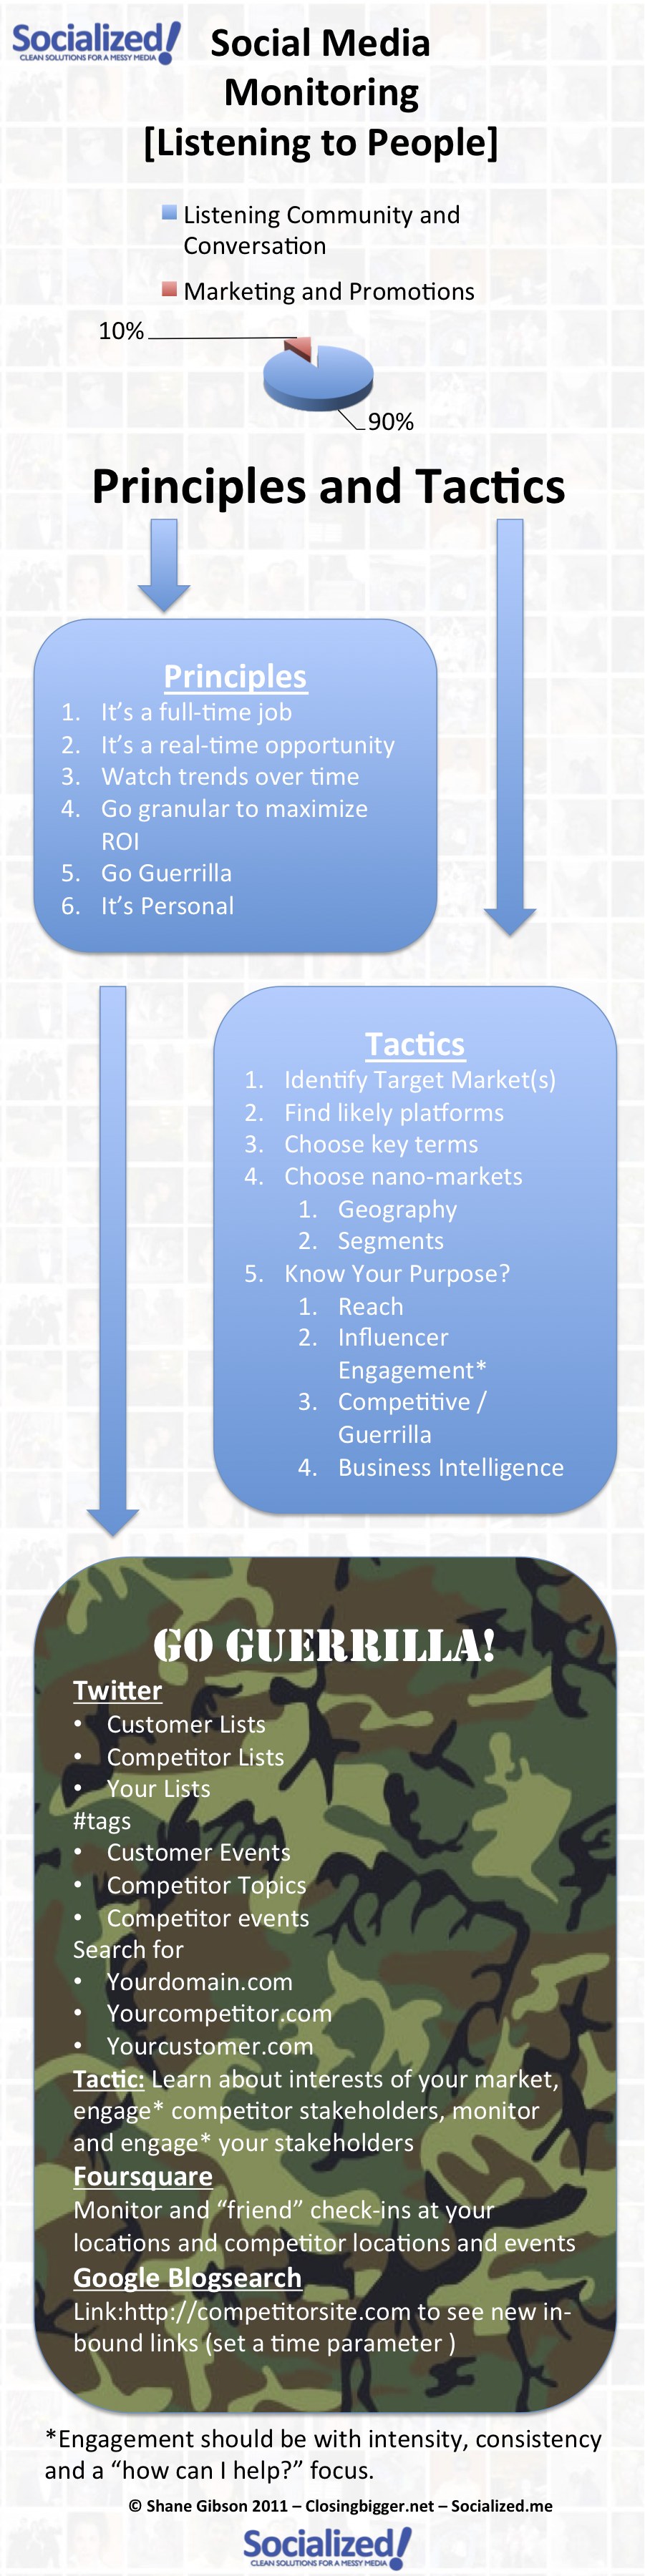 Social Media Monitoring: Effective Principles & Tactics [Infographic]